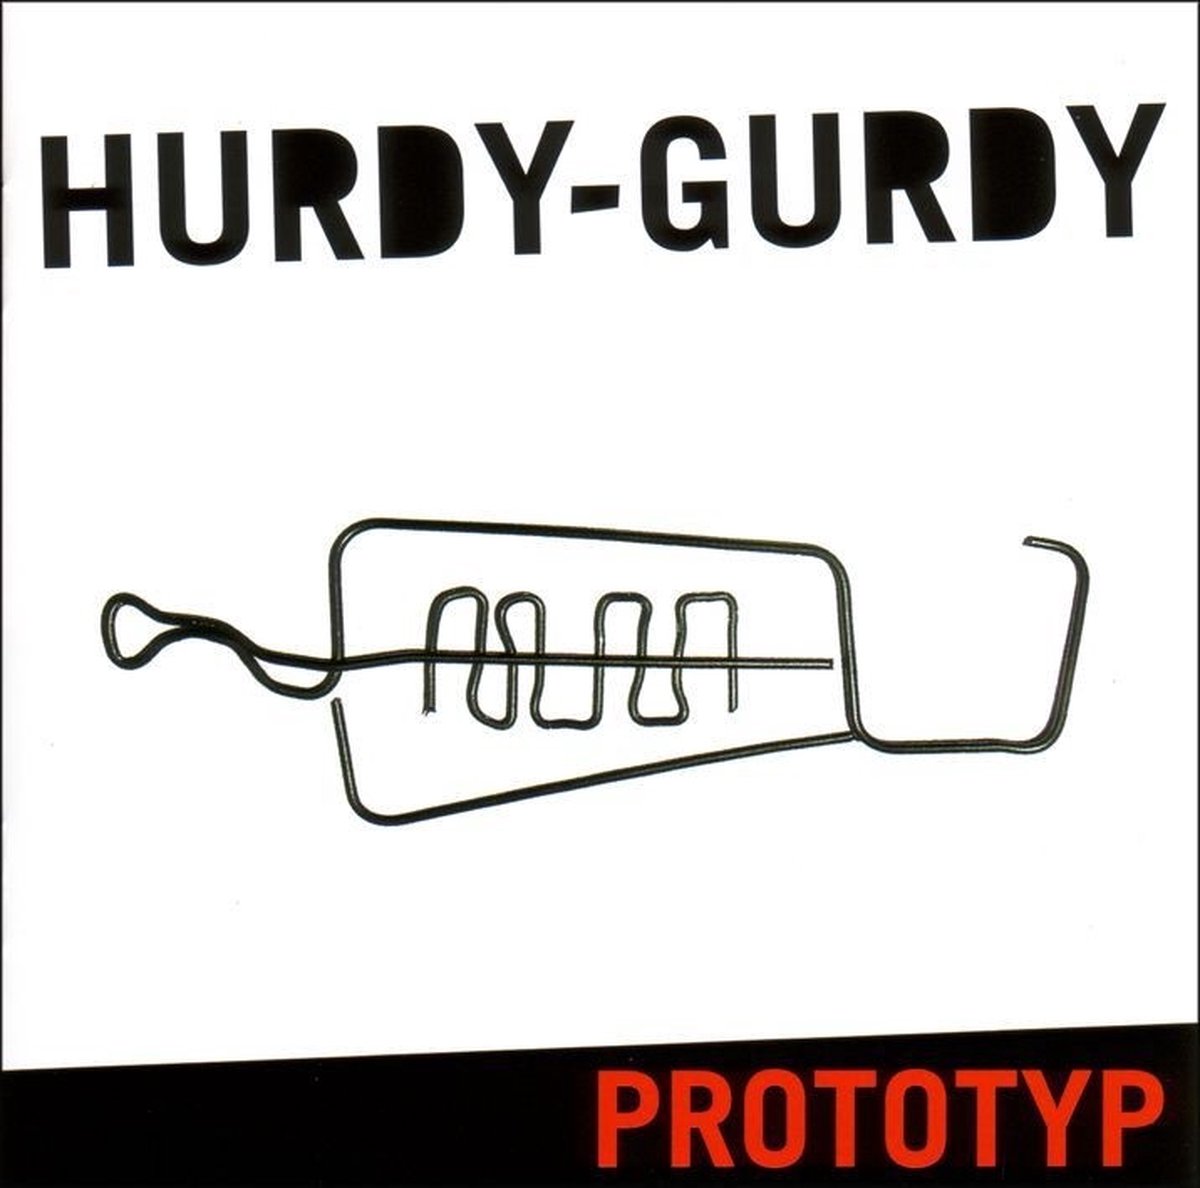 Hurdy-Gurdy - Prototyp (CD) - Hurdy-Gurdy